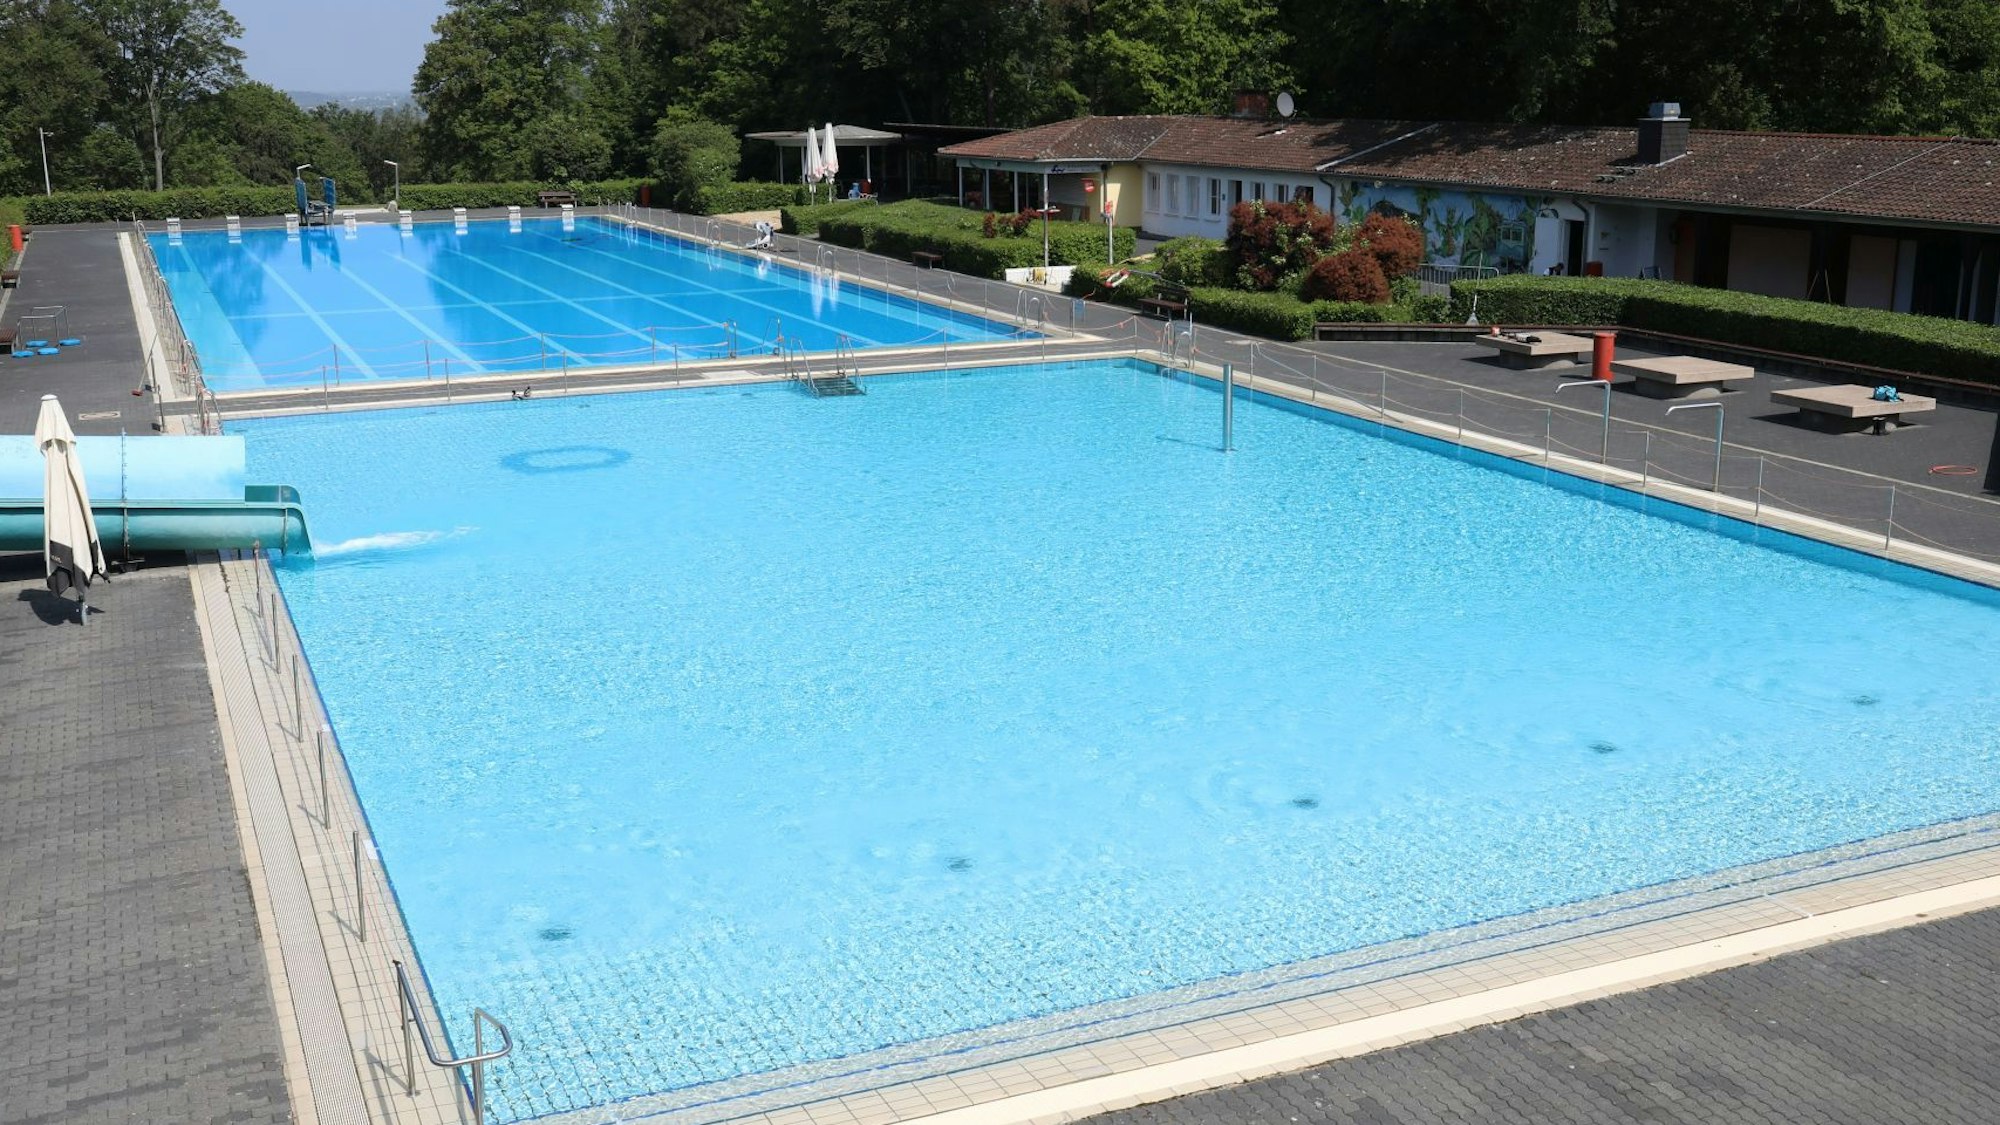 Das Bild zeigt das Nichtschwimmer- und das 50-Meter-Becken des Lemmerz-Freibades. Die Becken sind mit Wasser gefüllt.